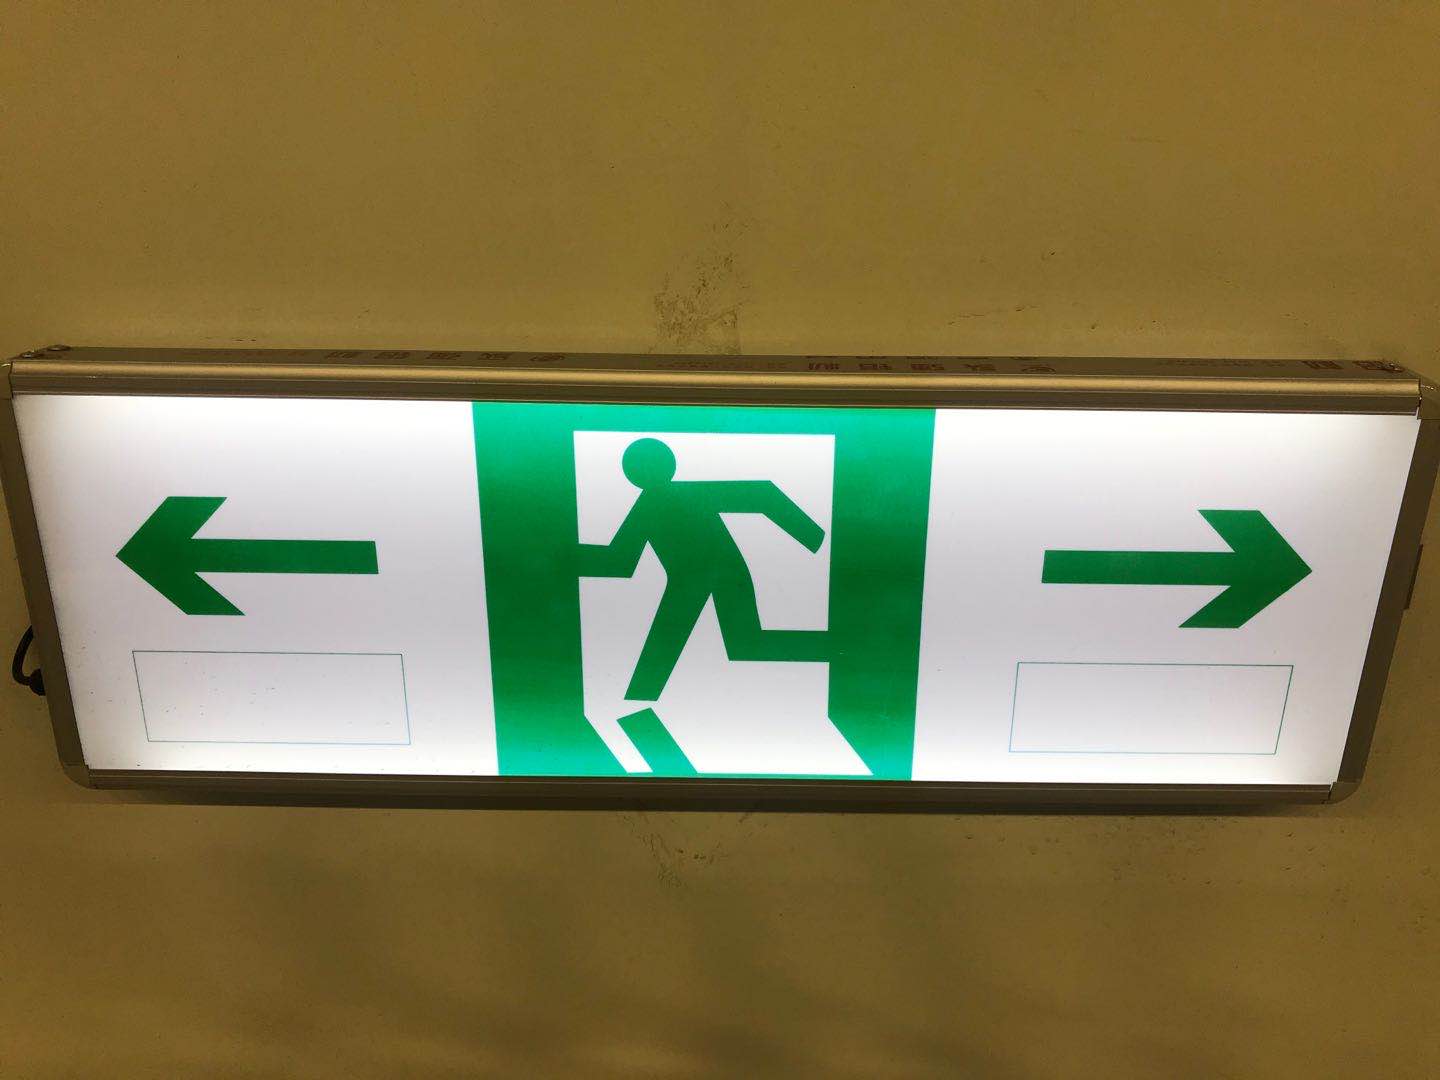 紧急疏散指示标志人行横洞指示标志车行横洞指示标志紧急停车带指示标志